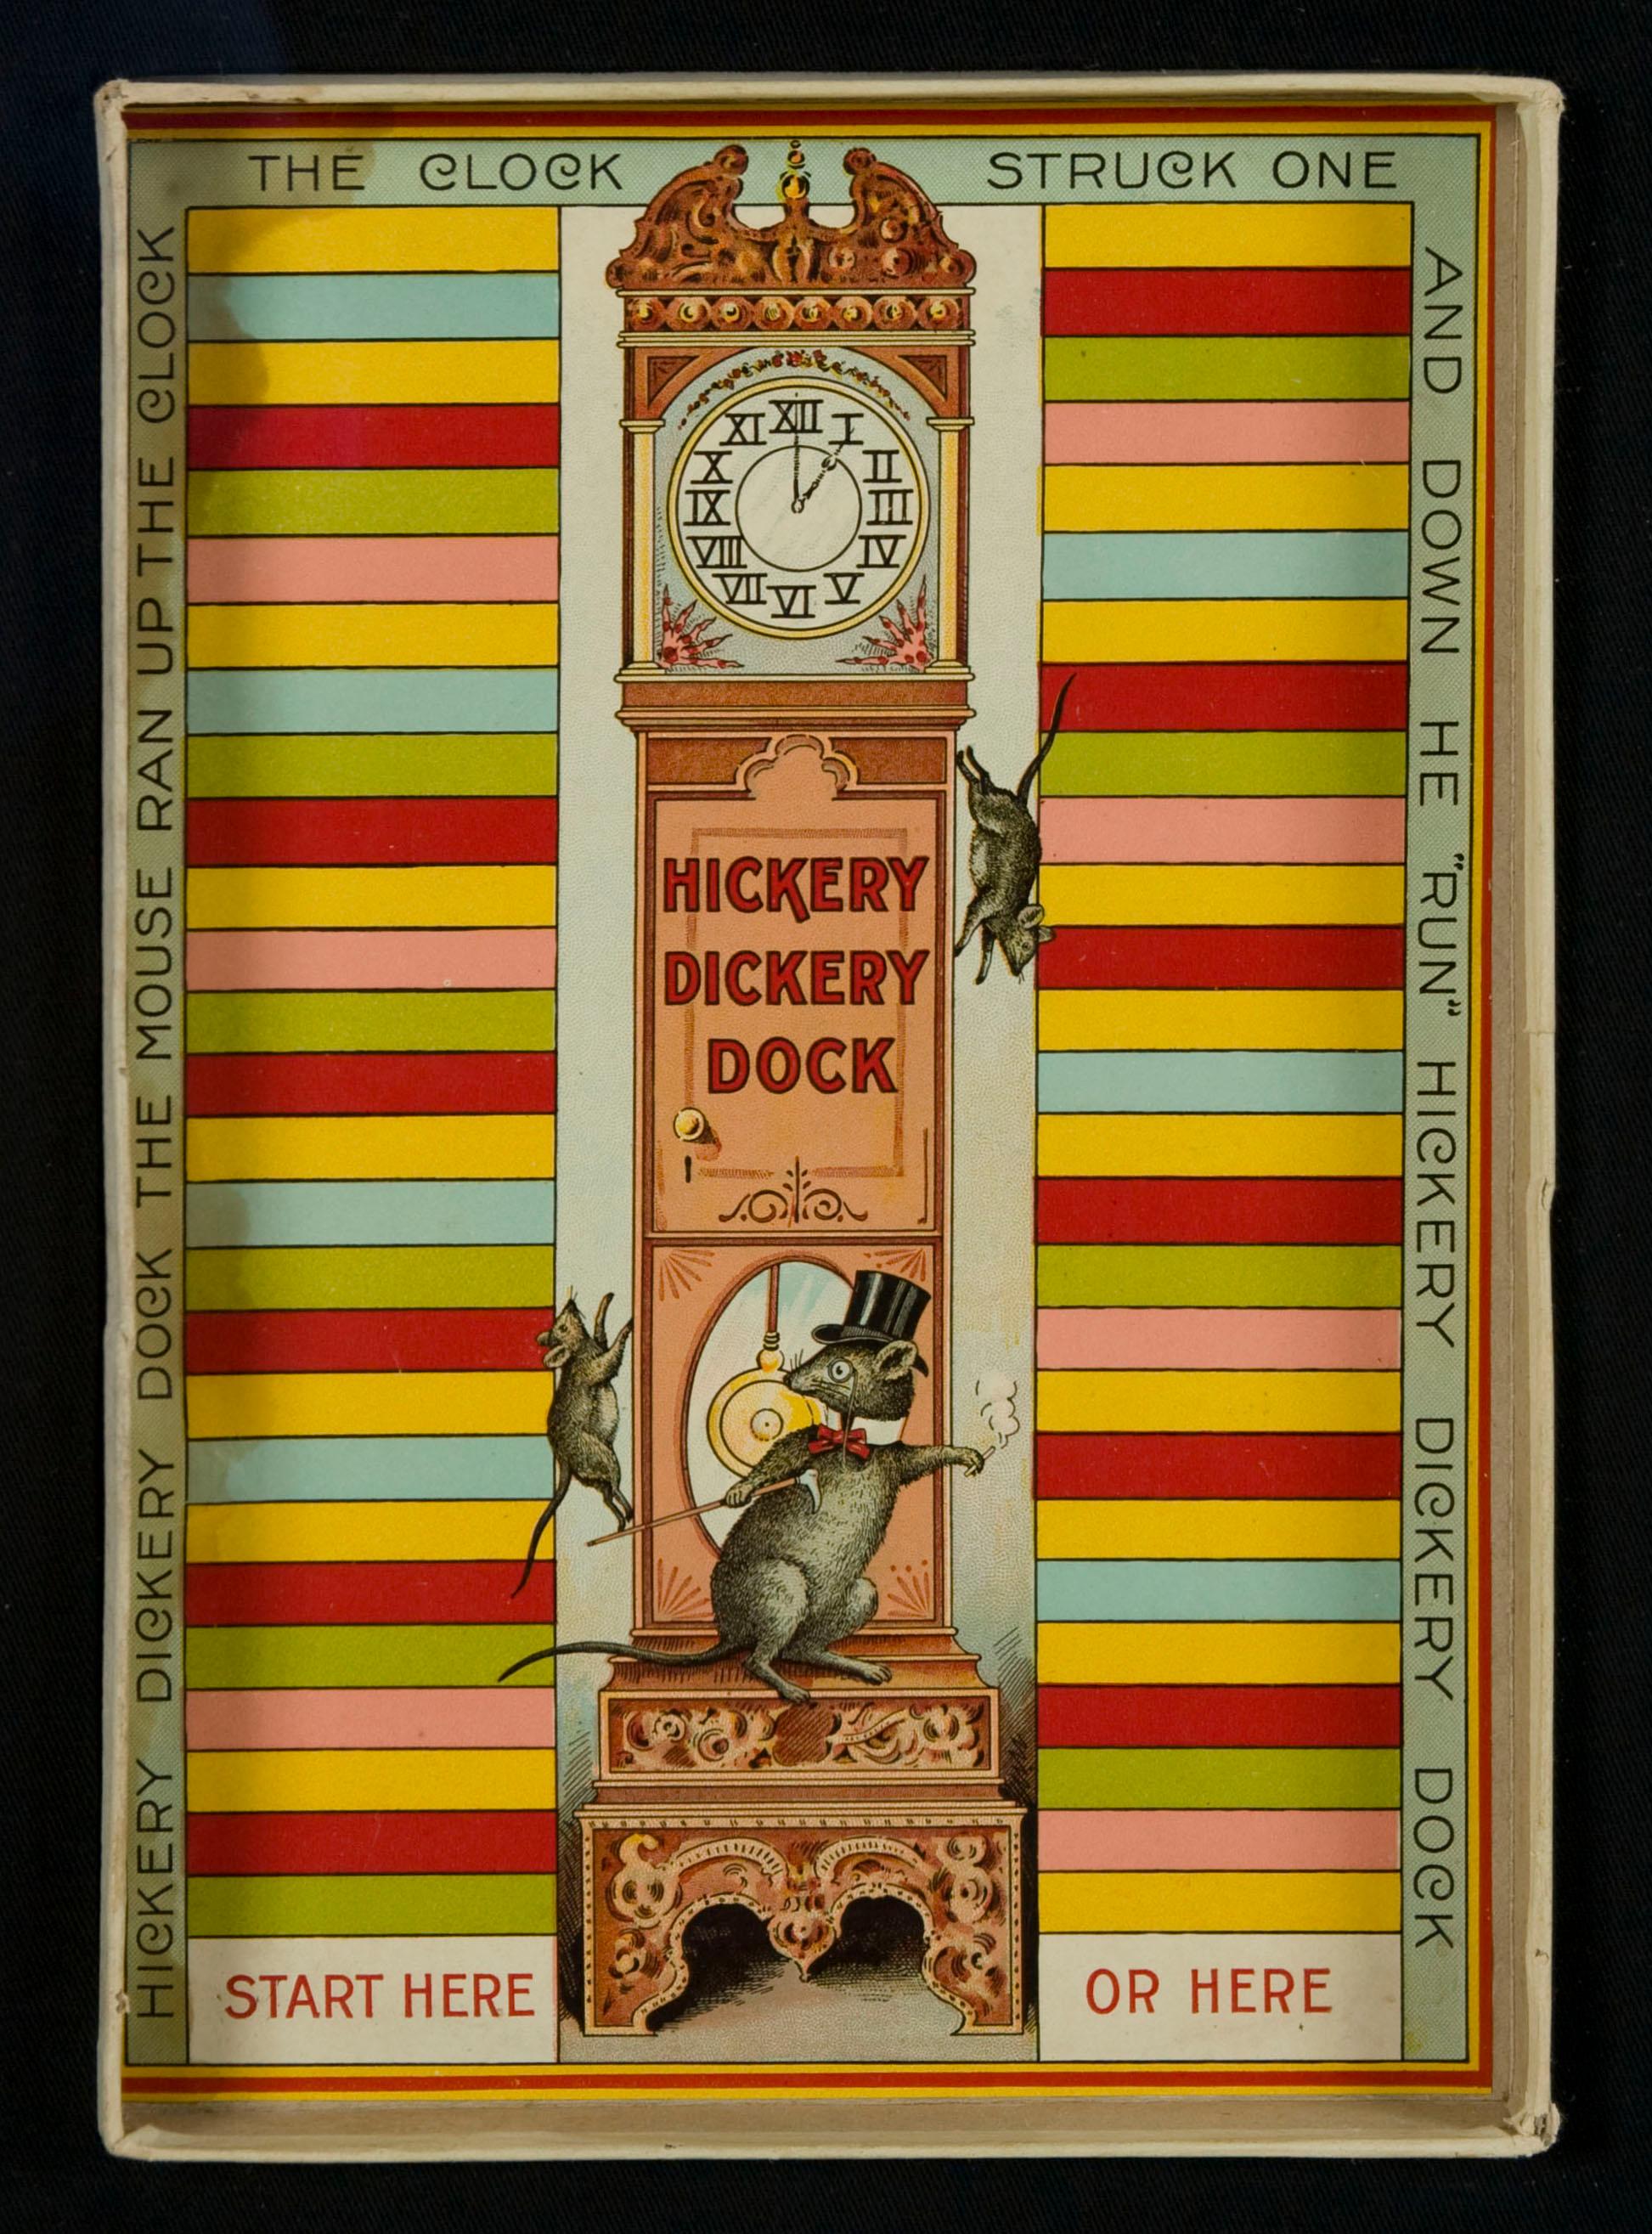 Dock Hickory Dickery : Jeu de société des premiers frères Parker avec de superbes graphismes de chat et de souris et d'horloge à grande caisse, 1900.

Breveté en 1899 et produit en 1900, ce jeu de société coloré de Parker Brothers présente des